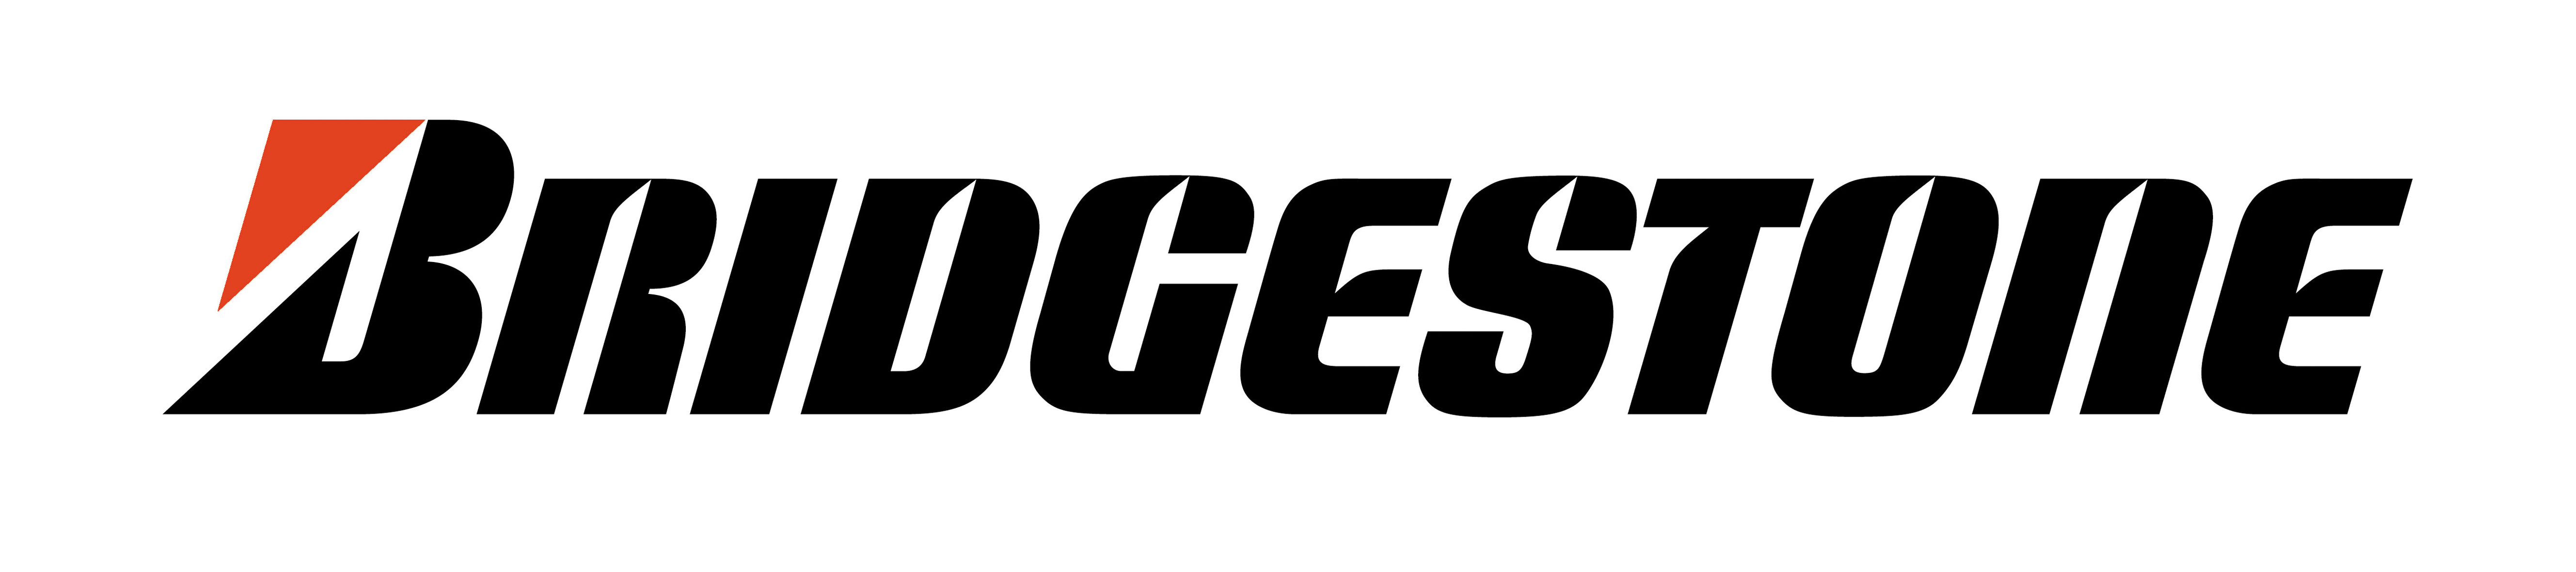 Логотип корпорации Bridgestone